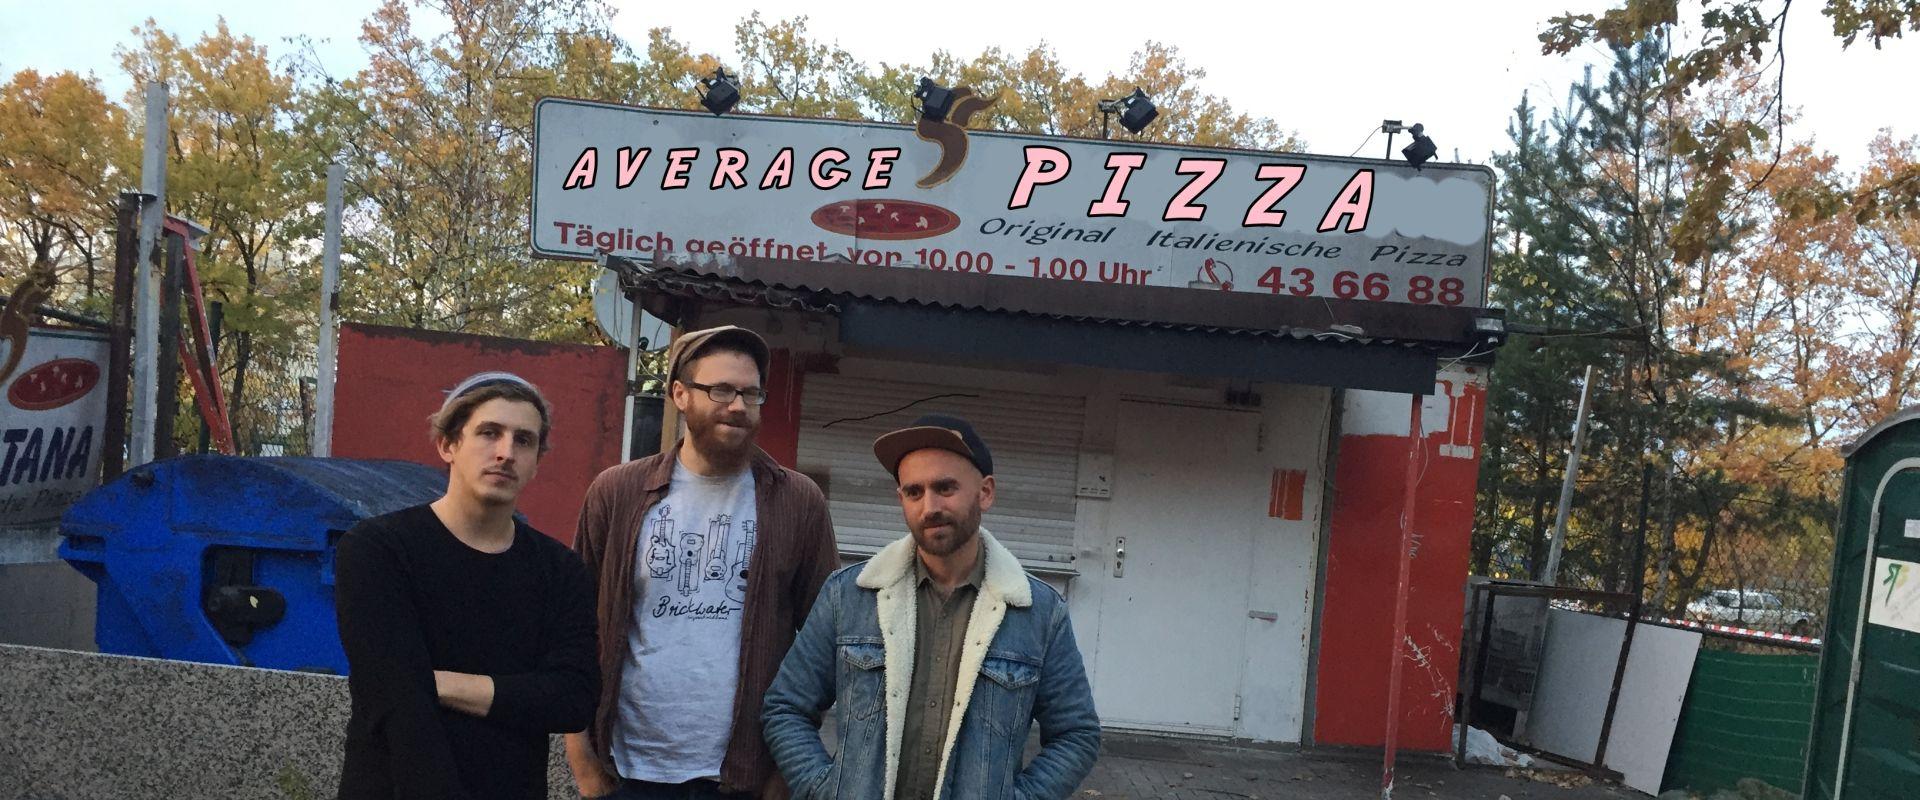 Band: Average Pizza